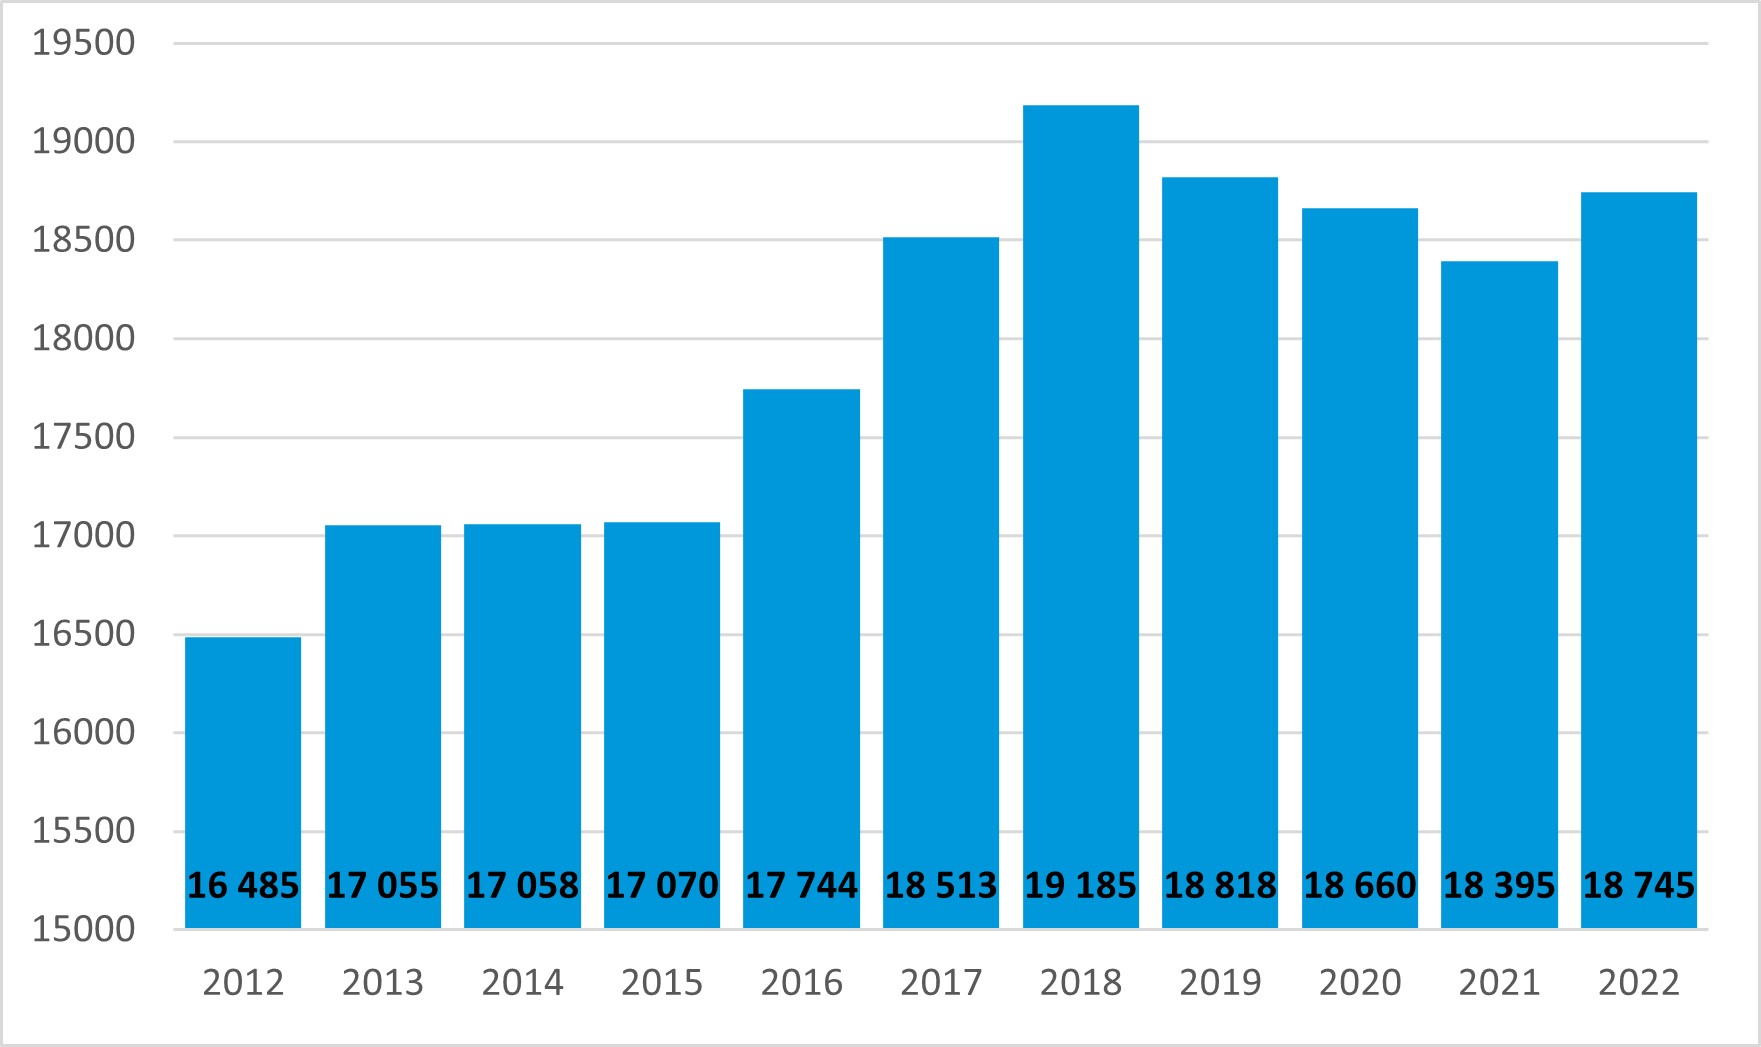 Tilasto velkajärjestelyasioista.     Velkajärjestelyiden määrä on vaihdellut vuosien 2012 ja 2022 välillä 16485 kappaleen ja 19185 kappaleen välillä. Vähiten velkajärjestelyasioita oli vuonna 2012 ja eniten vuonna 2018. Vuonna 2022 velkajärjestelyasioita oli 18745 kappaletta.